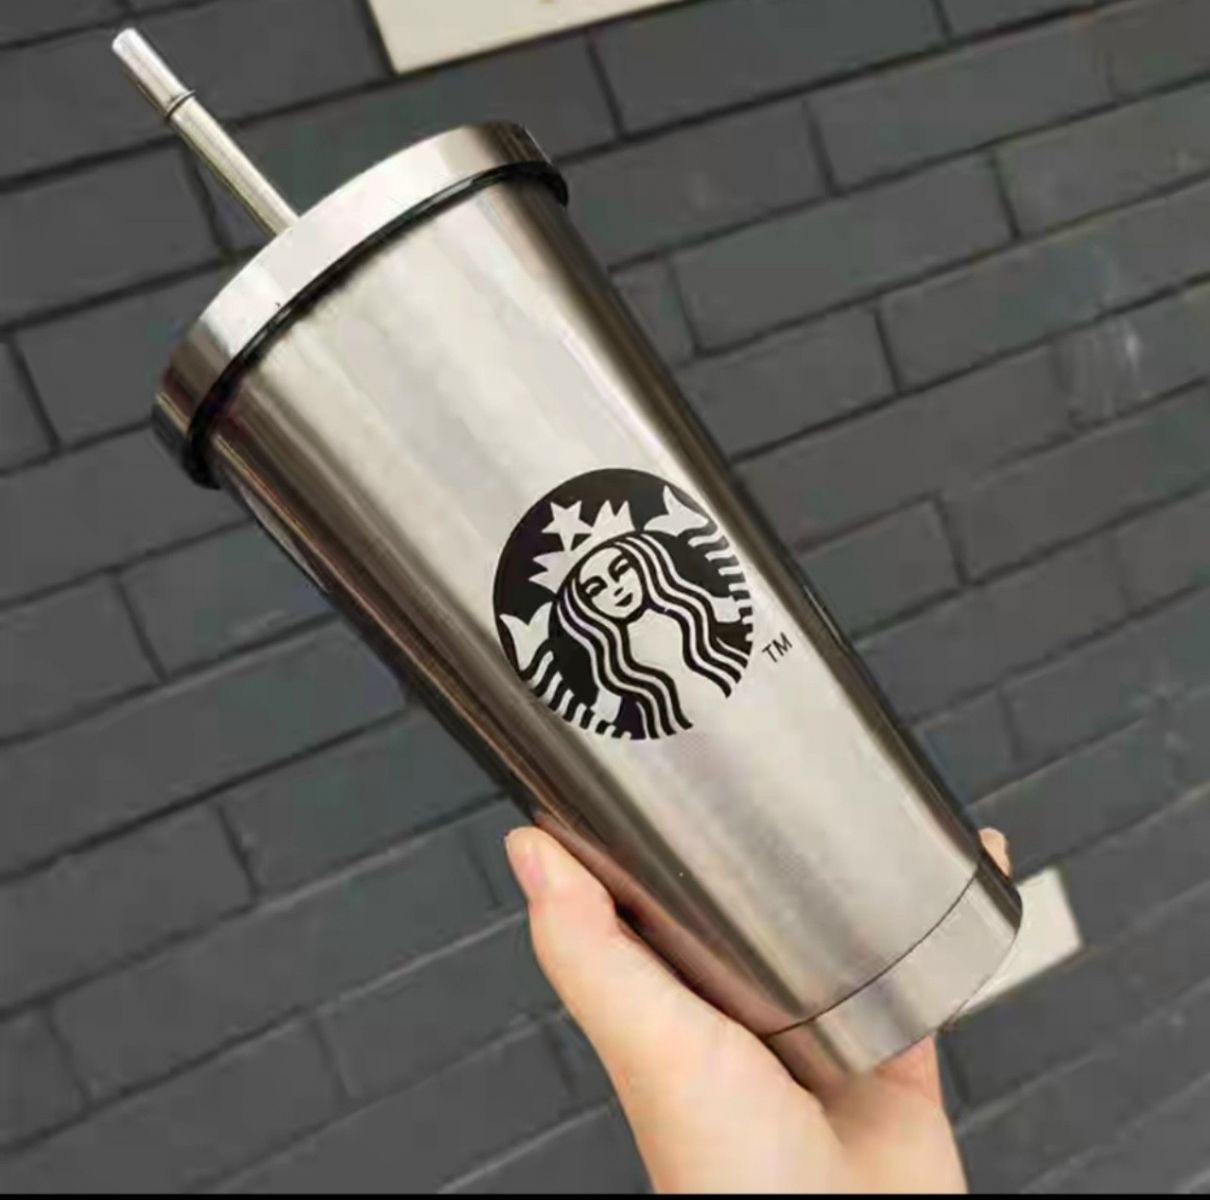 500ML: Bình nước inox Starbucks 500ml giữ nhiệt kèm ống hút tiện lợi (T50) (Cái)